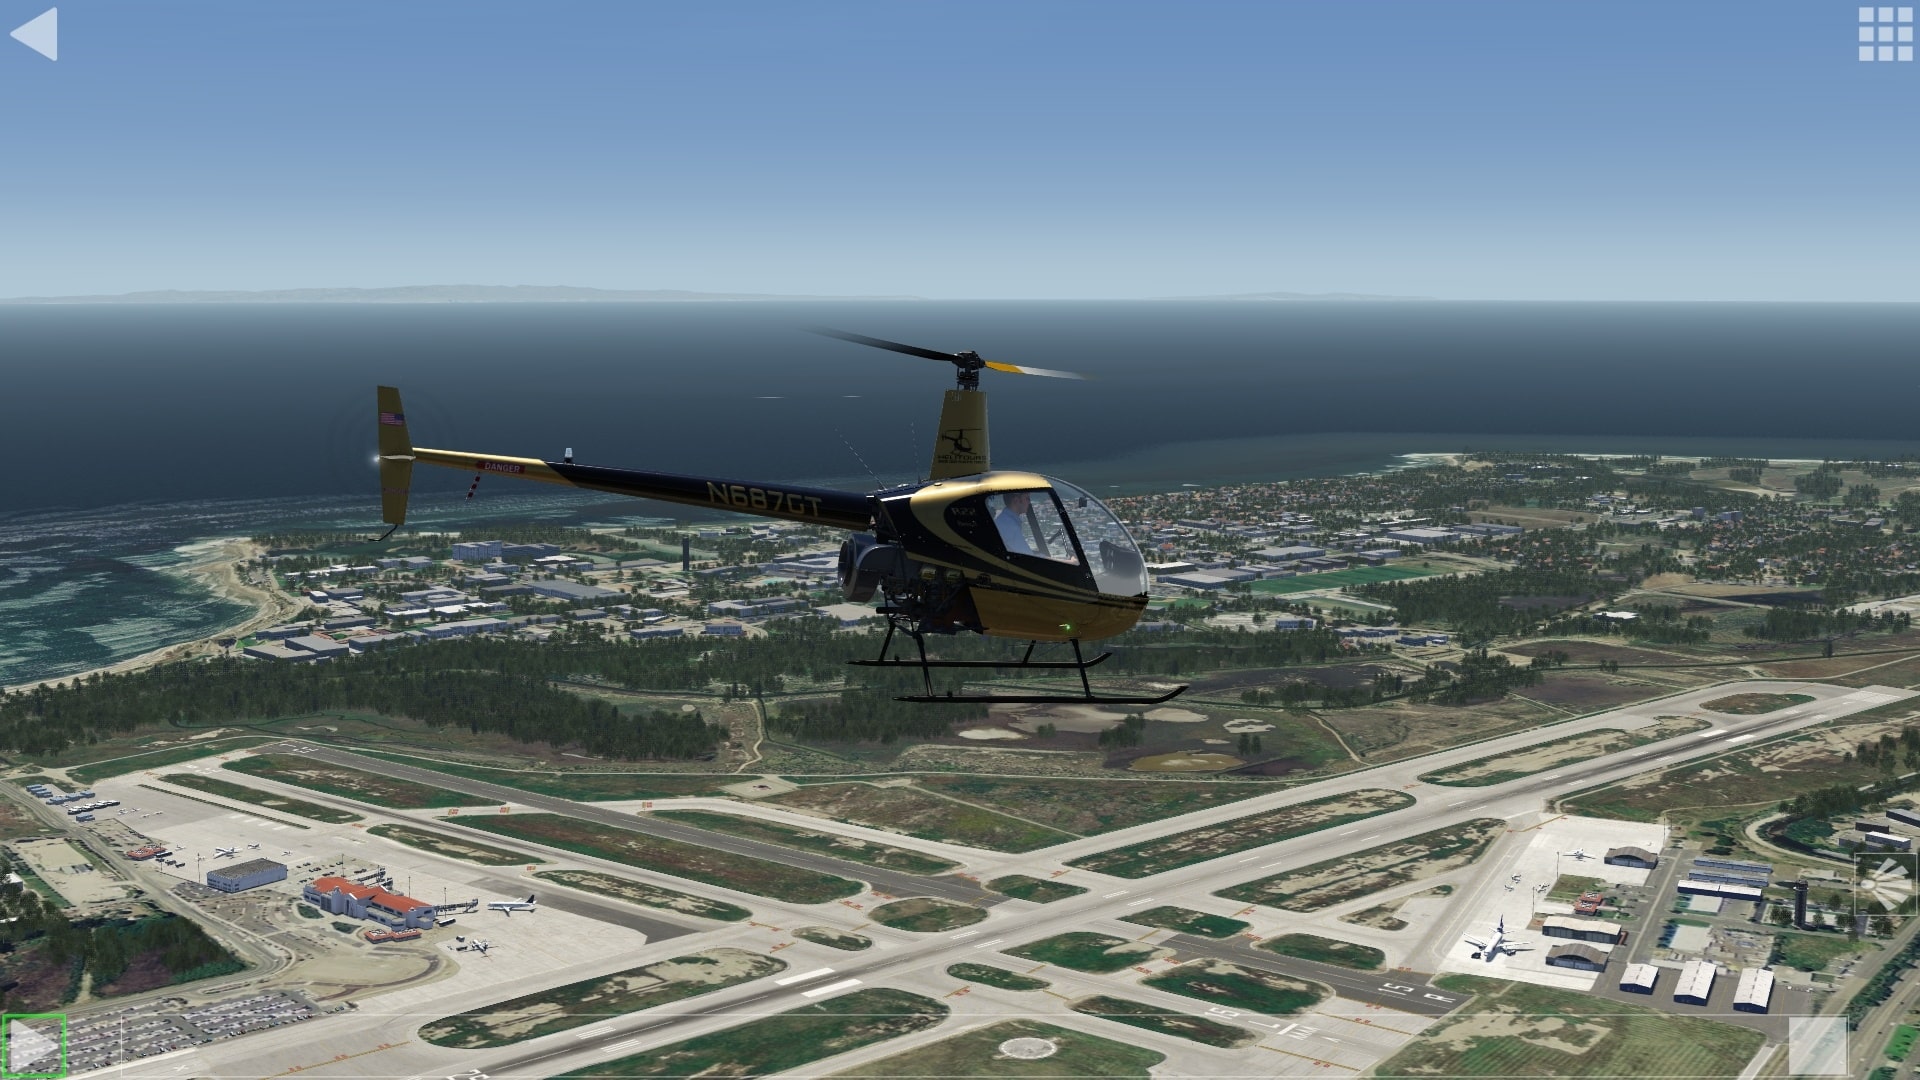  (Воспроизведение моего первого симулированного полета на вертолете со времен PlayStation 1. Я все еще горжусь. Летающая модель версии Aerofly FS самолета Robinson R22 также используется в Швейцарии в сертифицированном EASA учебном устройстве для имитации полетов)